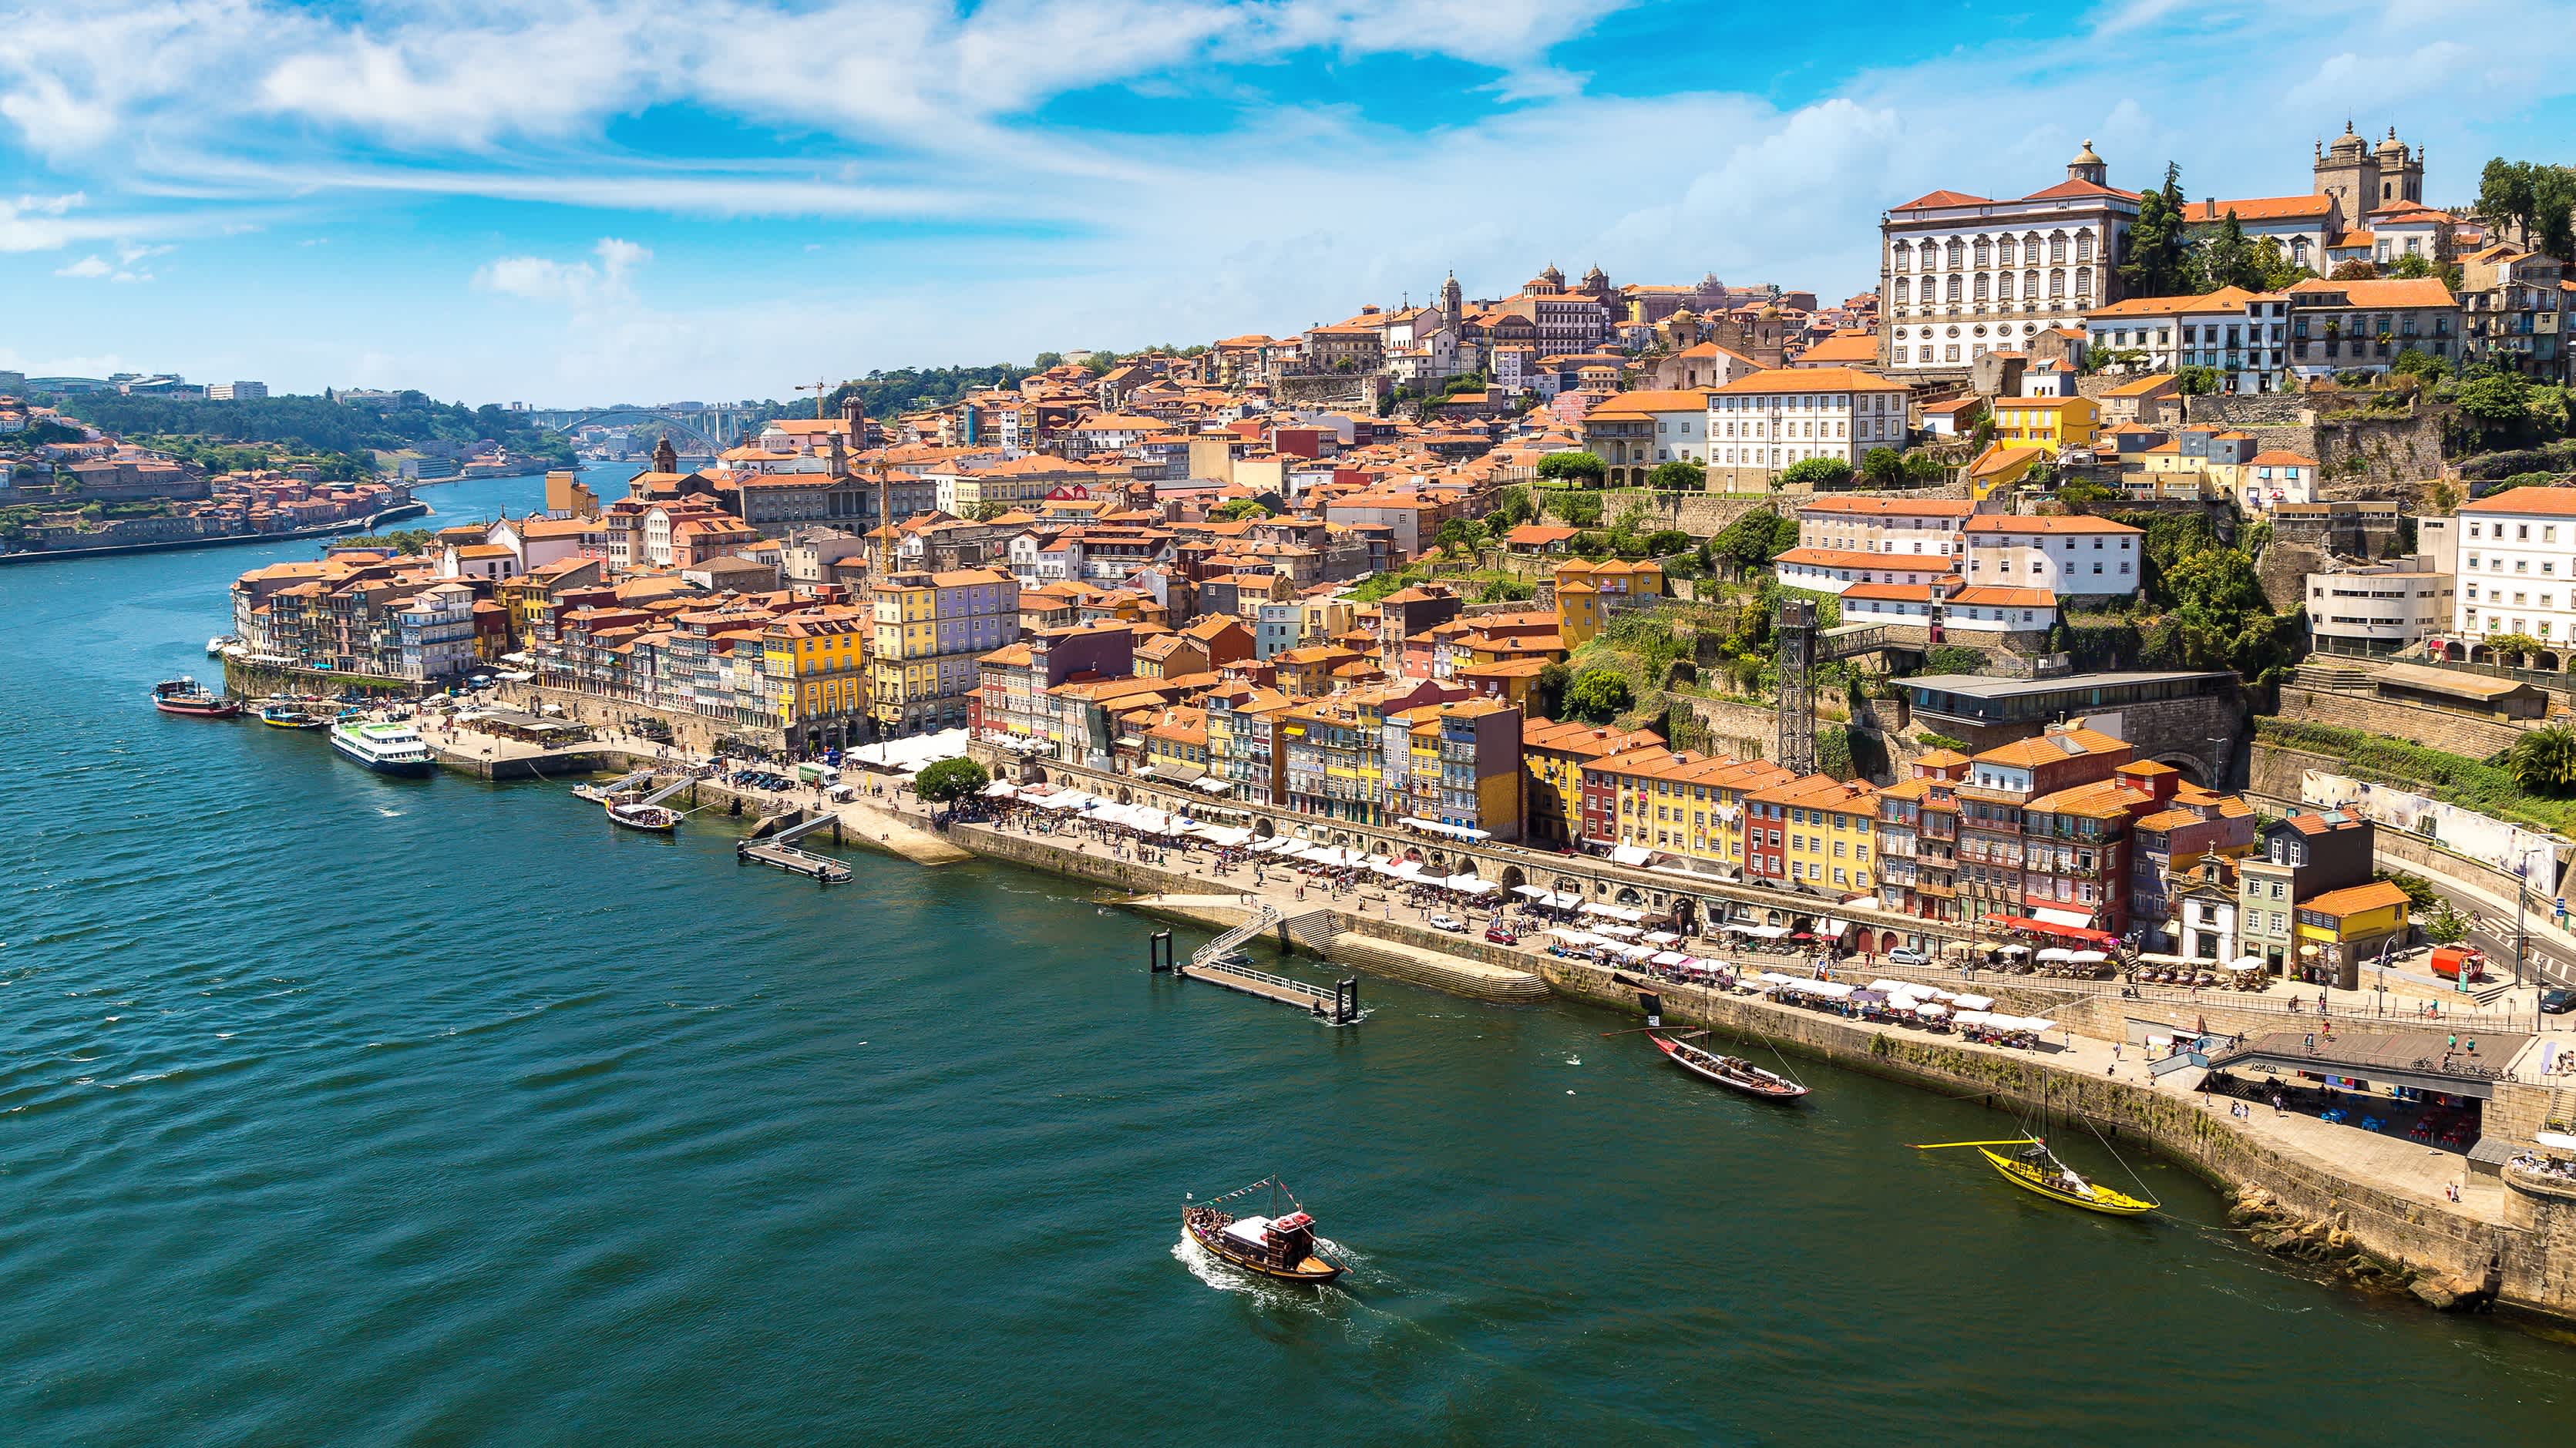 Vue aérienne panoramique de Porto par une belle journée d'été, Portugal

